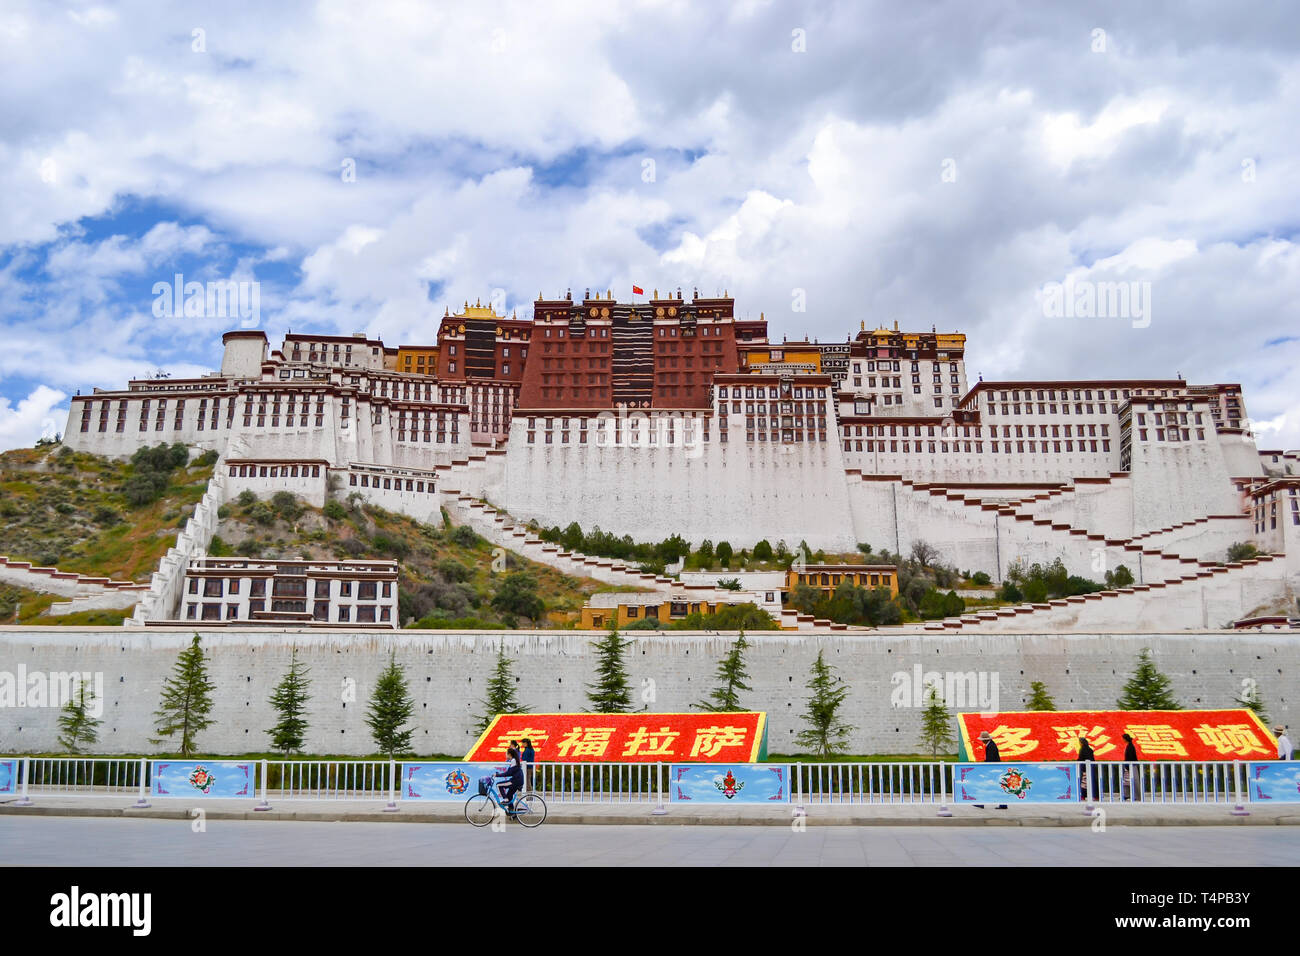 Palacio de Potala, la residencia del Dalai Lama y la arquitectura más importantes del budismo tibetano en Lhasa, Tibet, China Foto de stock